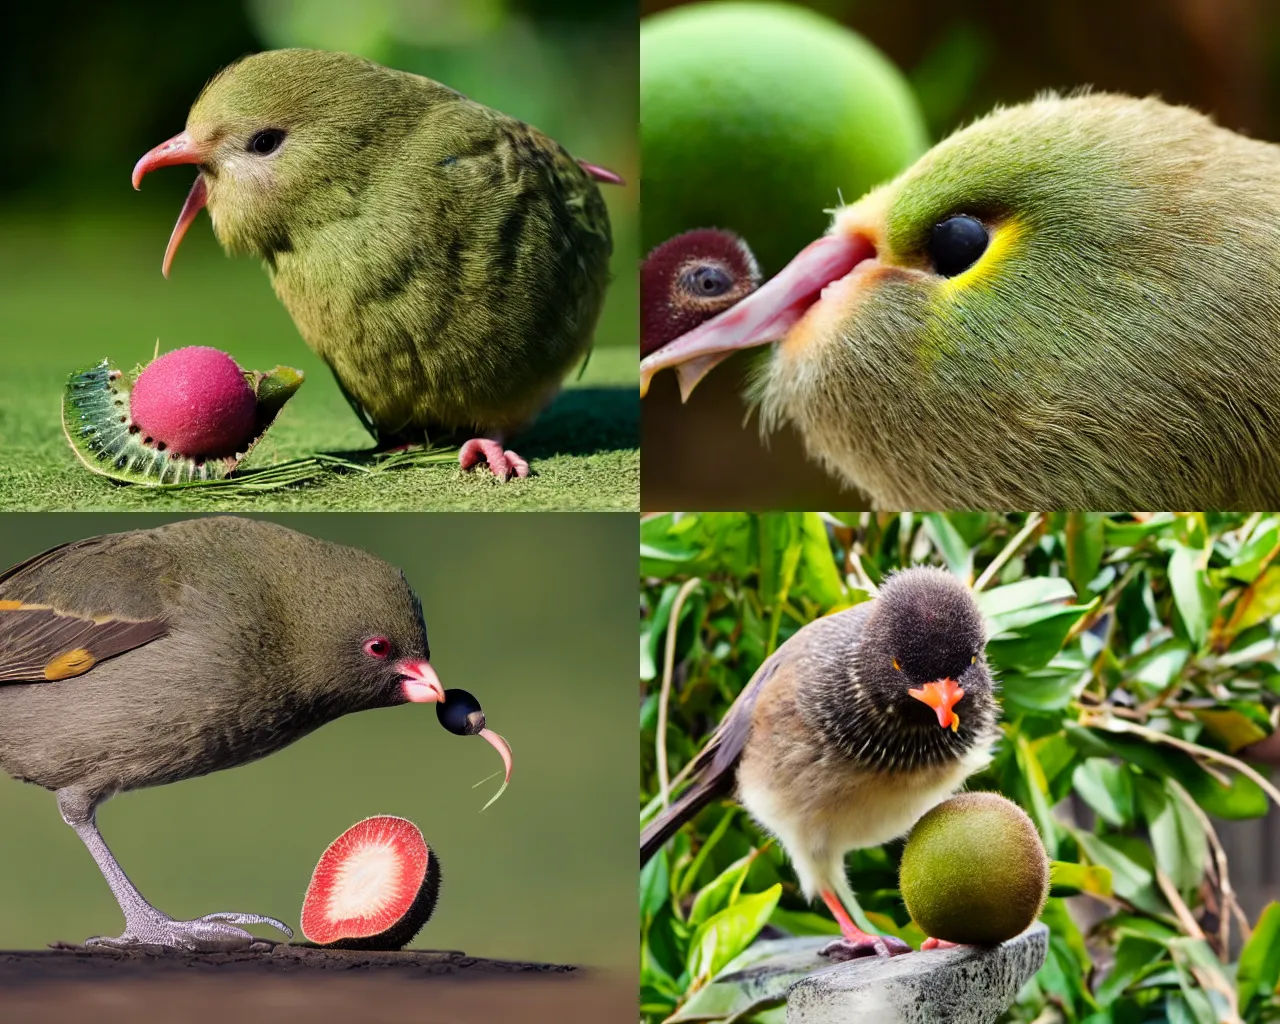 Prompt: a kiwi bird, eating a kiwi fruit